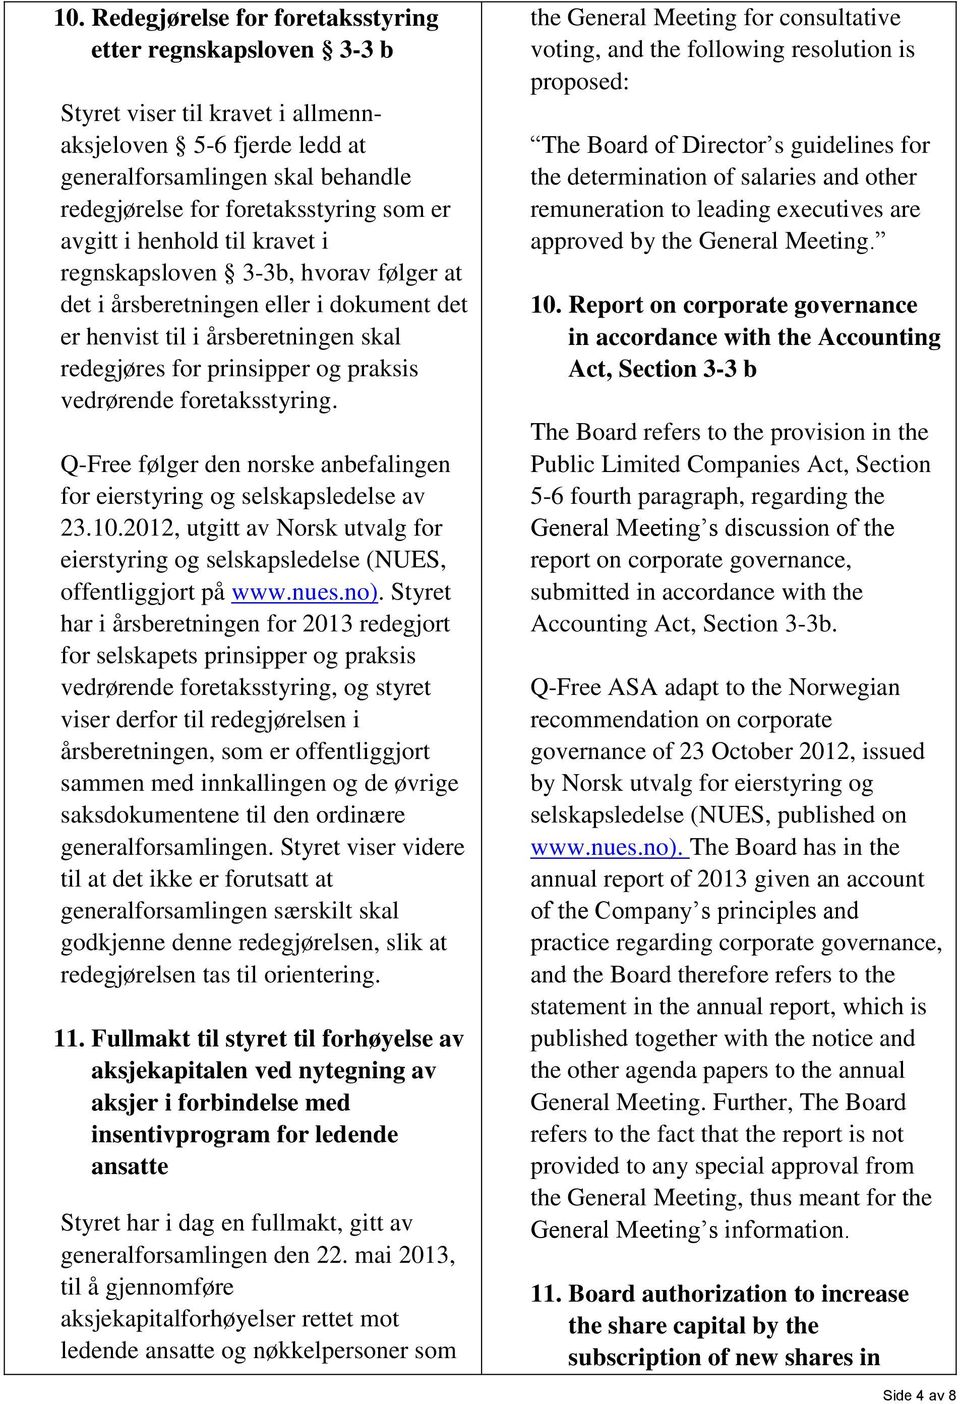 foretaksstyring. Q-Free følger den norske anbefalingen for eierstyring og selskapsledelse av 23.10.2012, utgitt av Norsk utvalg for eierstyring og selskapsledelse (NUES, offentliggjort på www.nues.